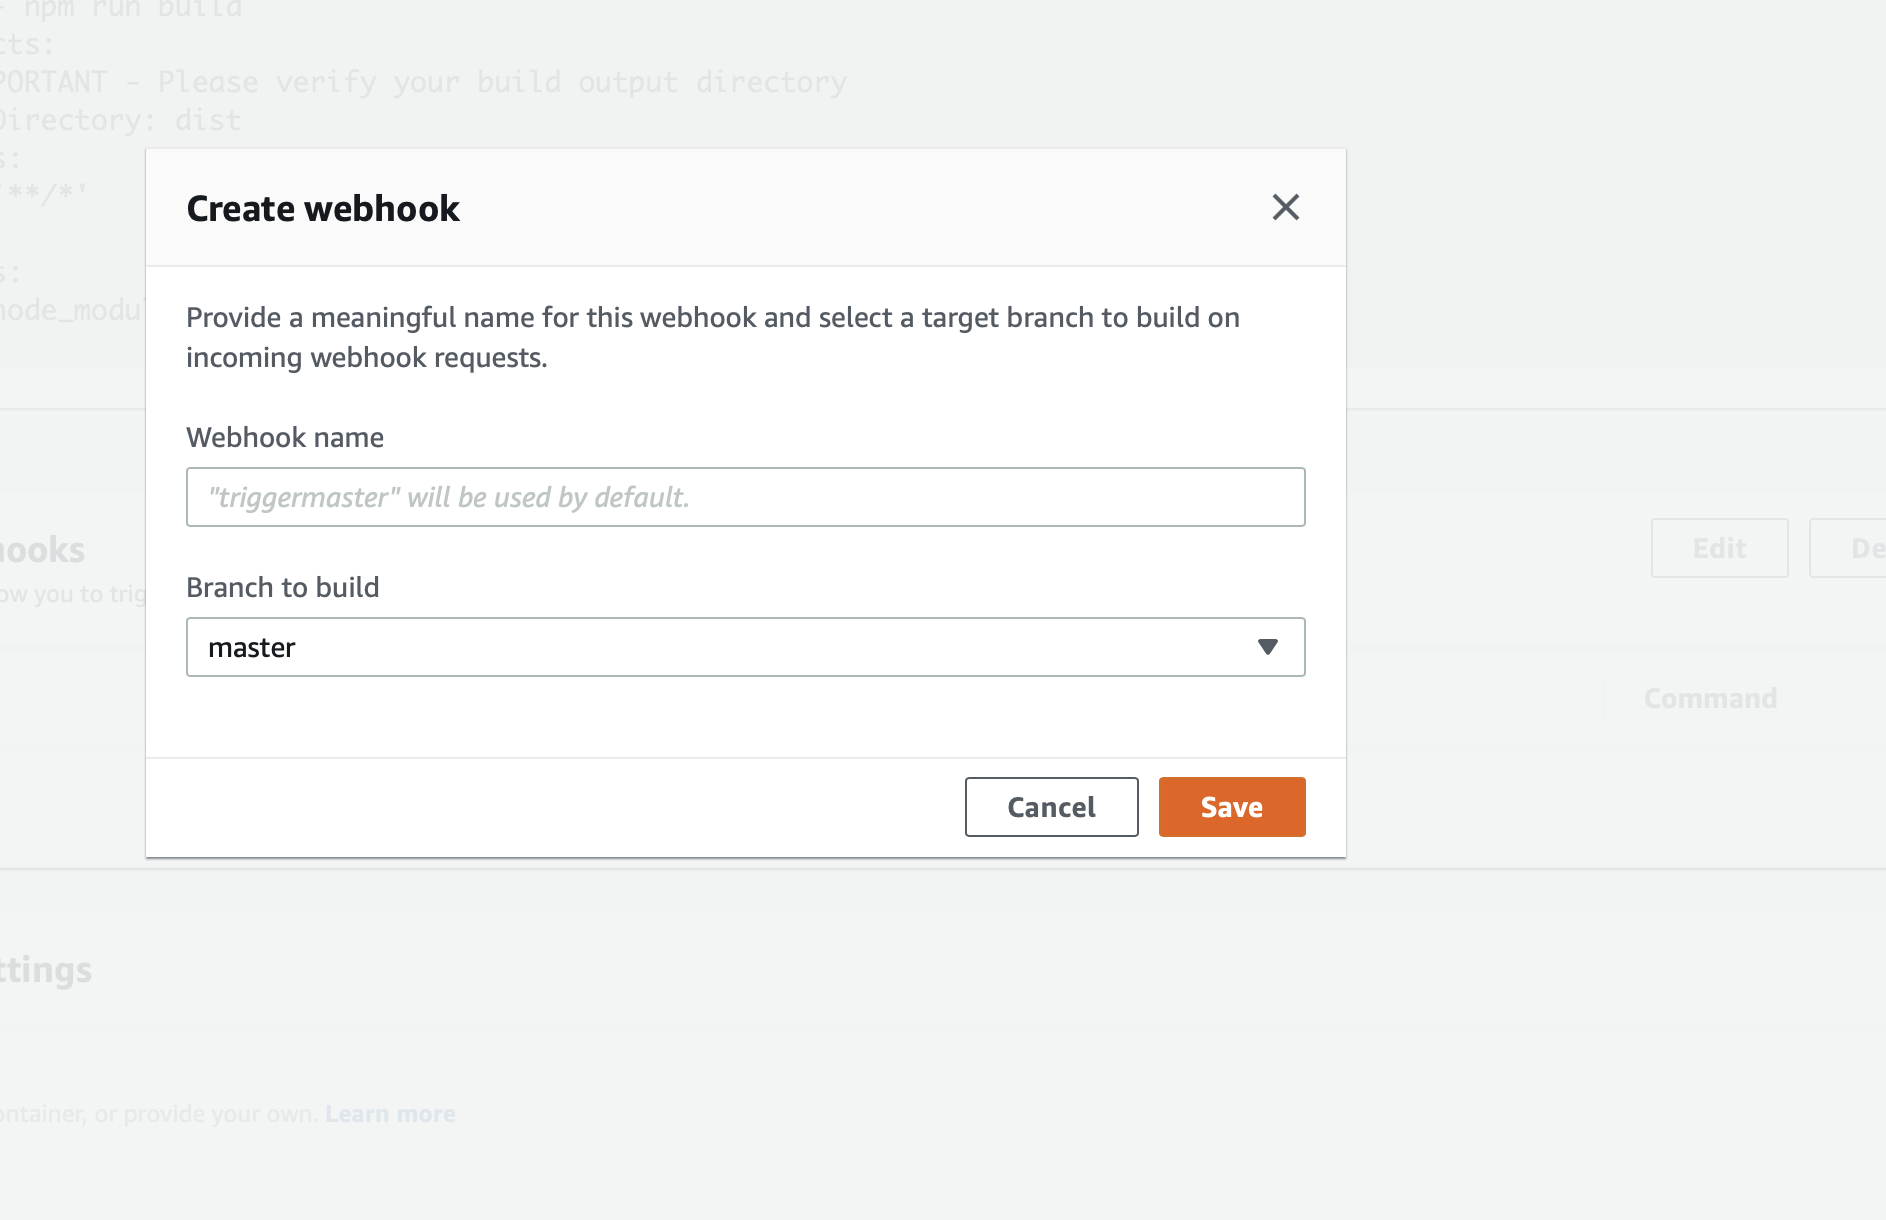  Create webhook form screenshot